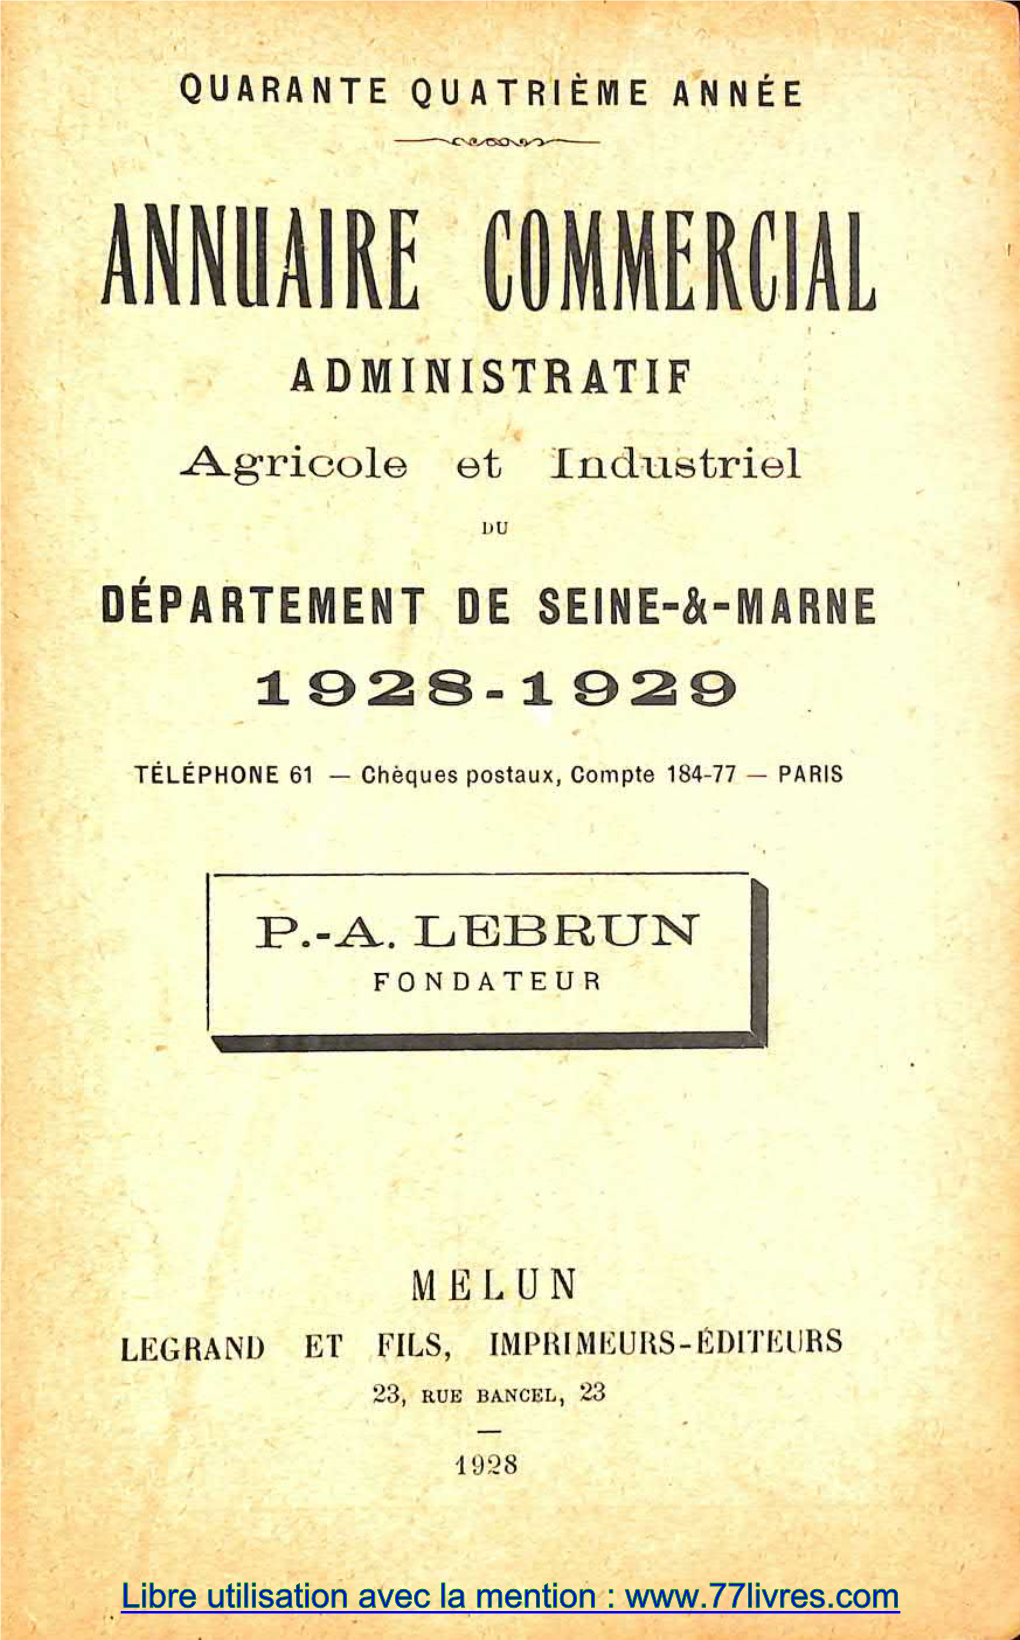 Libre Utilisation Avec La Mention : CANTON DE BRIE-COAITE-ROBERT 165 CANTON DE BRIE-COMTE-ROBERT Lopii,.Vtiox : 11,255 Liahilimls